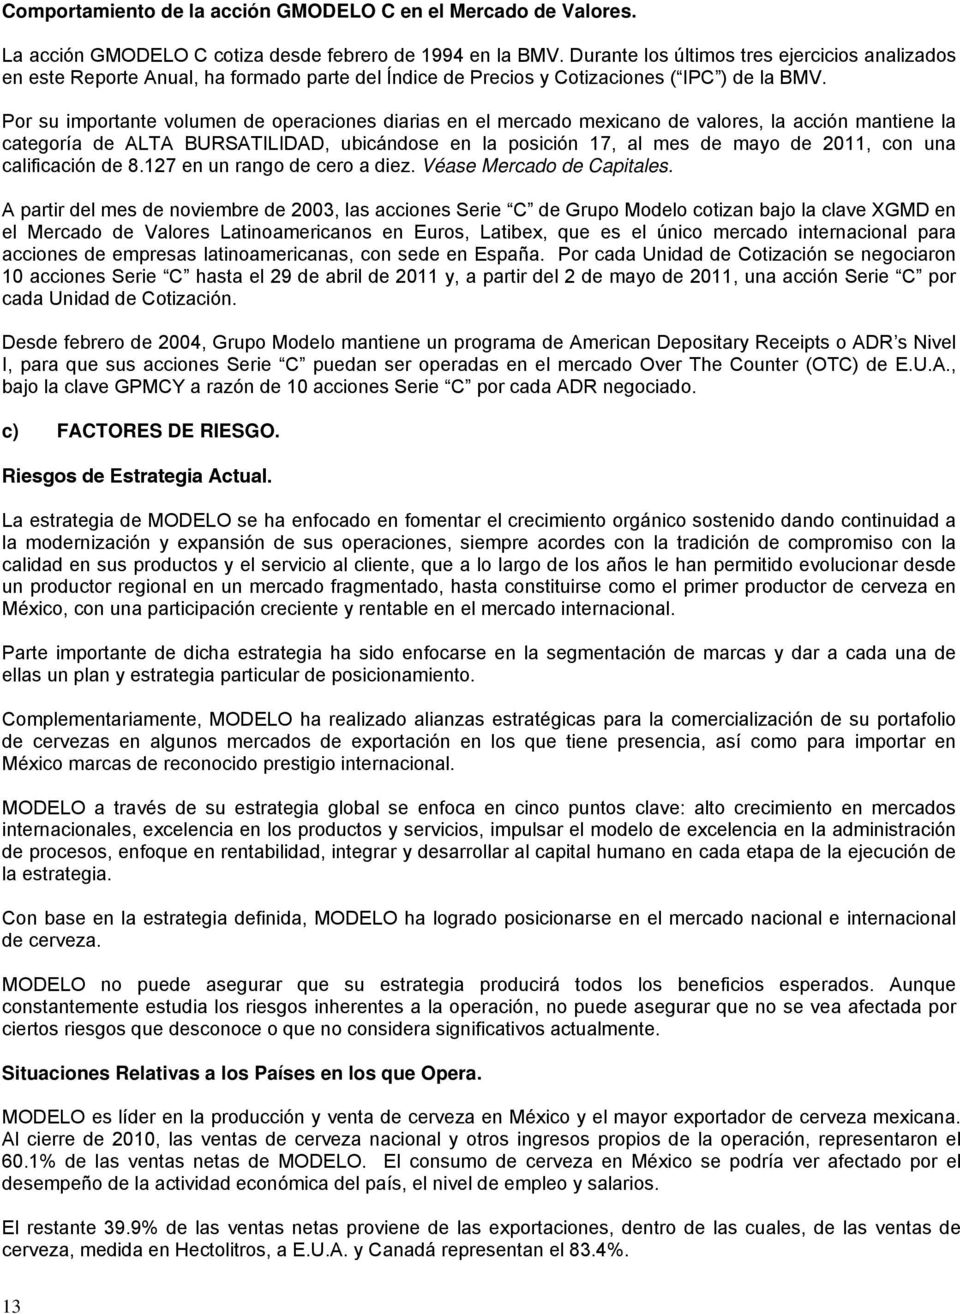 GRUPO MODELO, . DE . - PDF Descargar libre